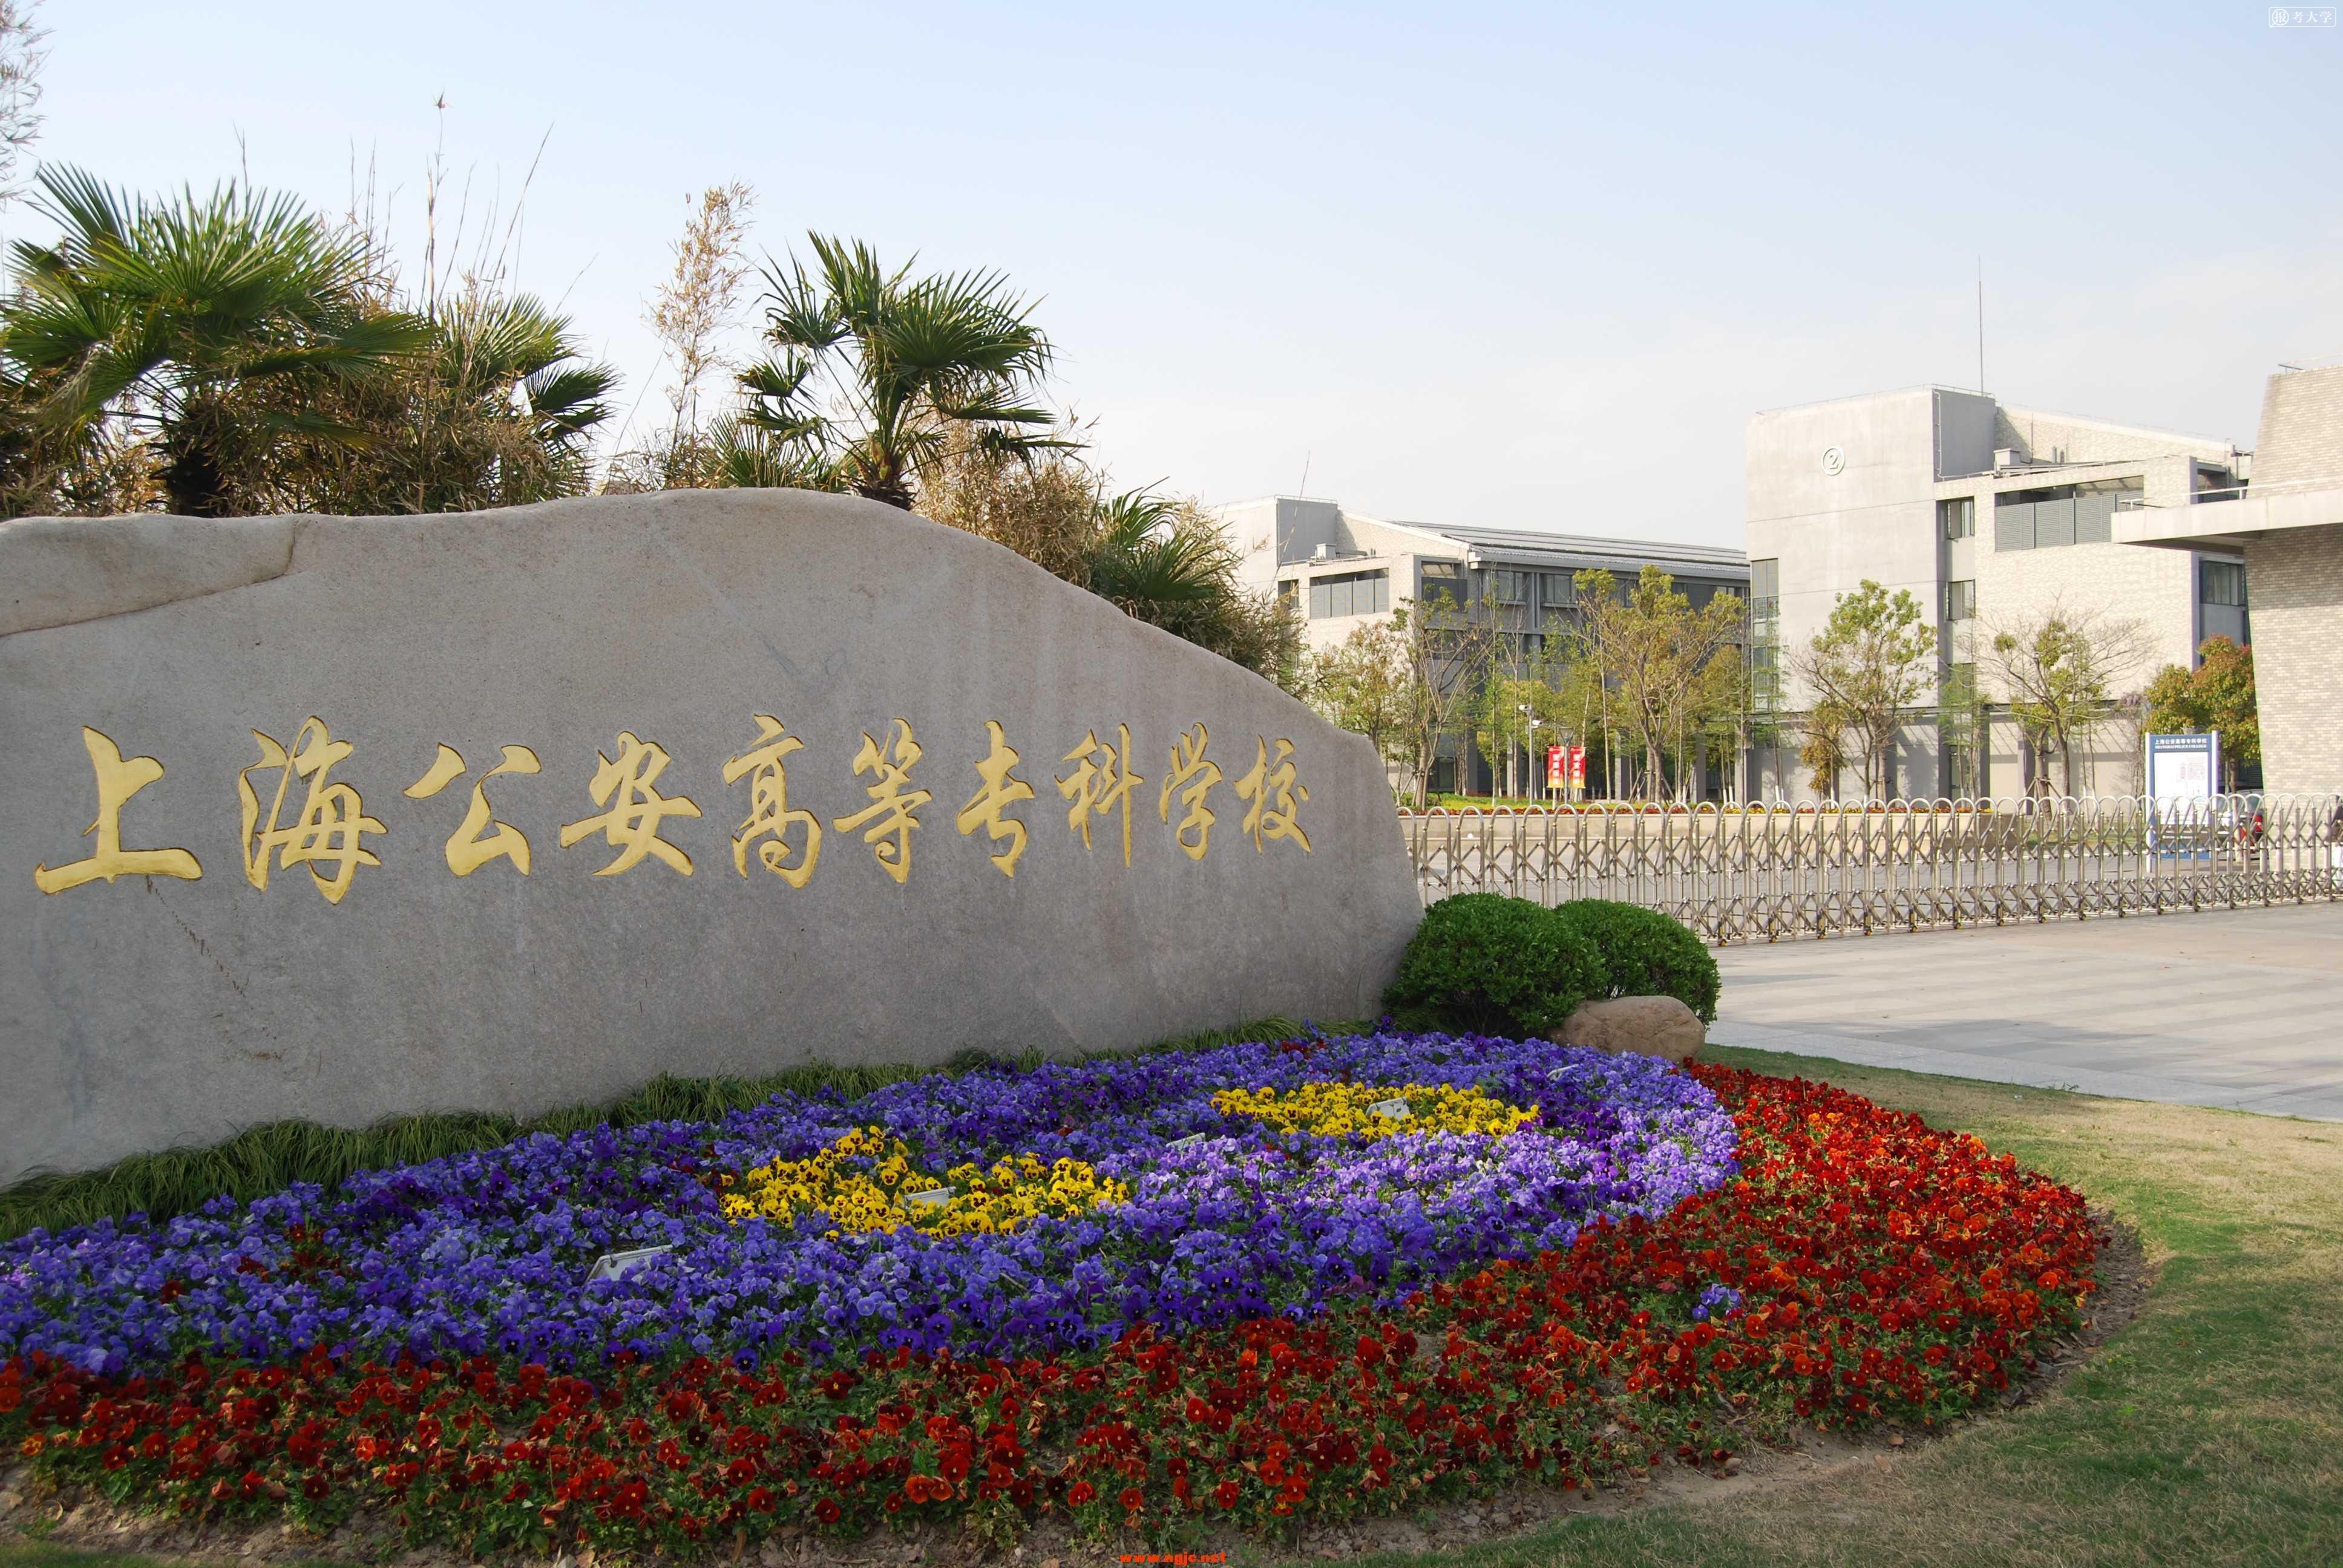 上海公安学院照片图片